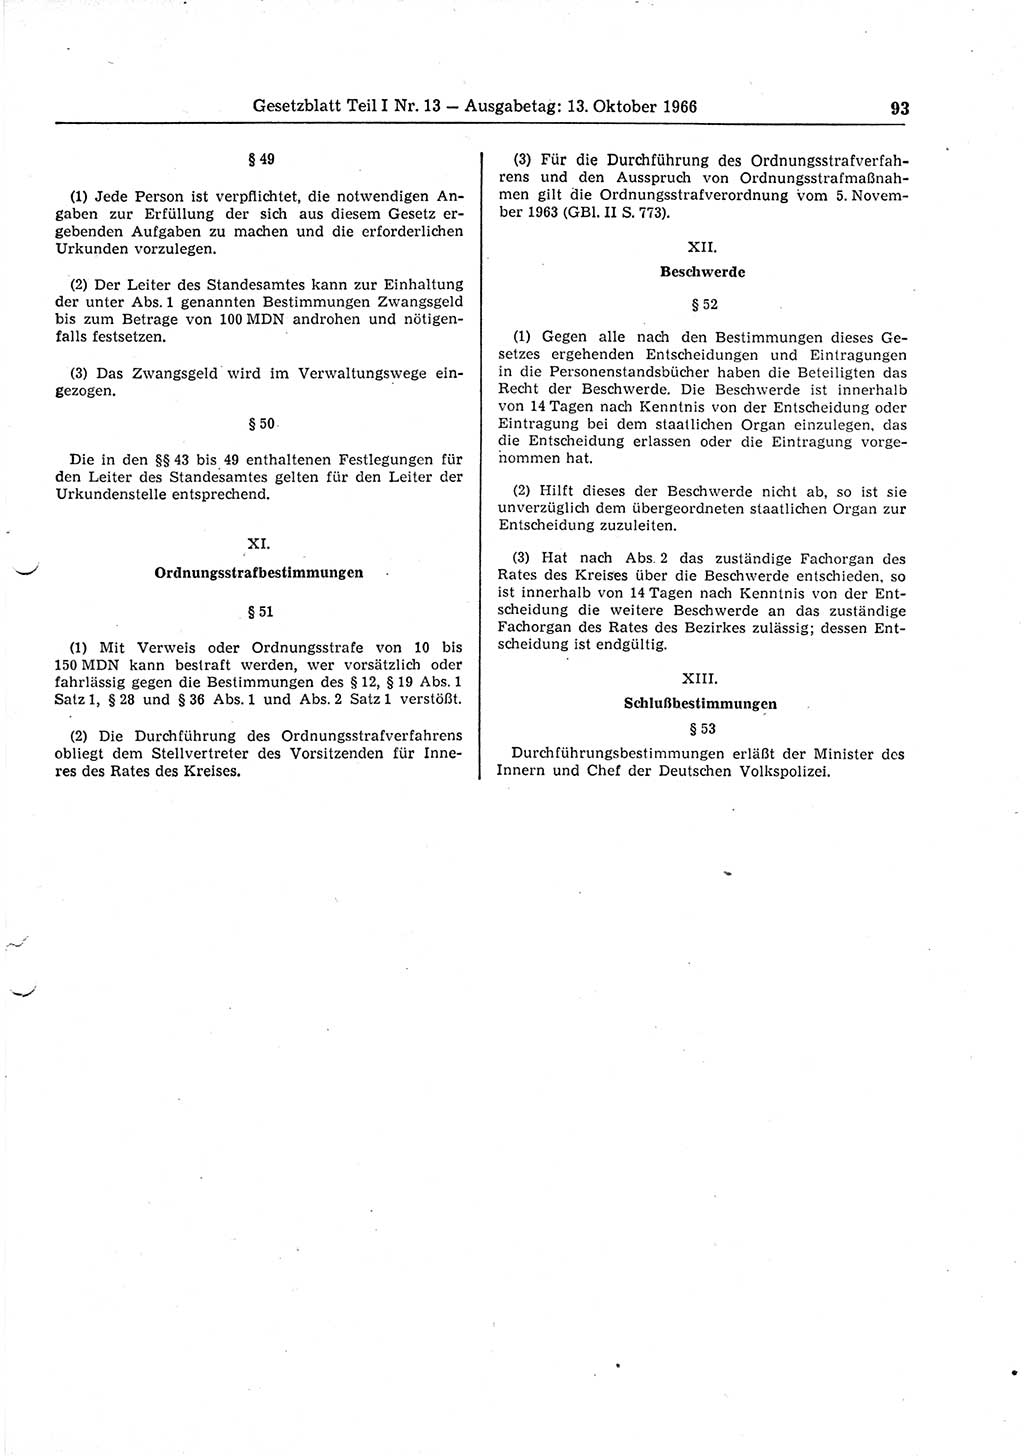 Gesetzblatt (GBl.) der Deutschen Demokratischen Republik (DDR) Teil Ⅰ 1966, Seite 93 (GBl. DDR Ⅰ 1966, S. 93)